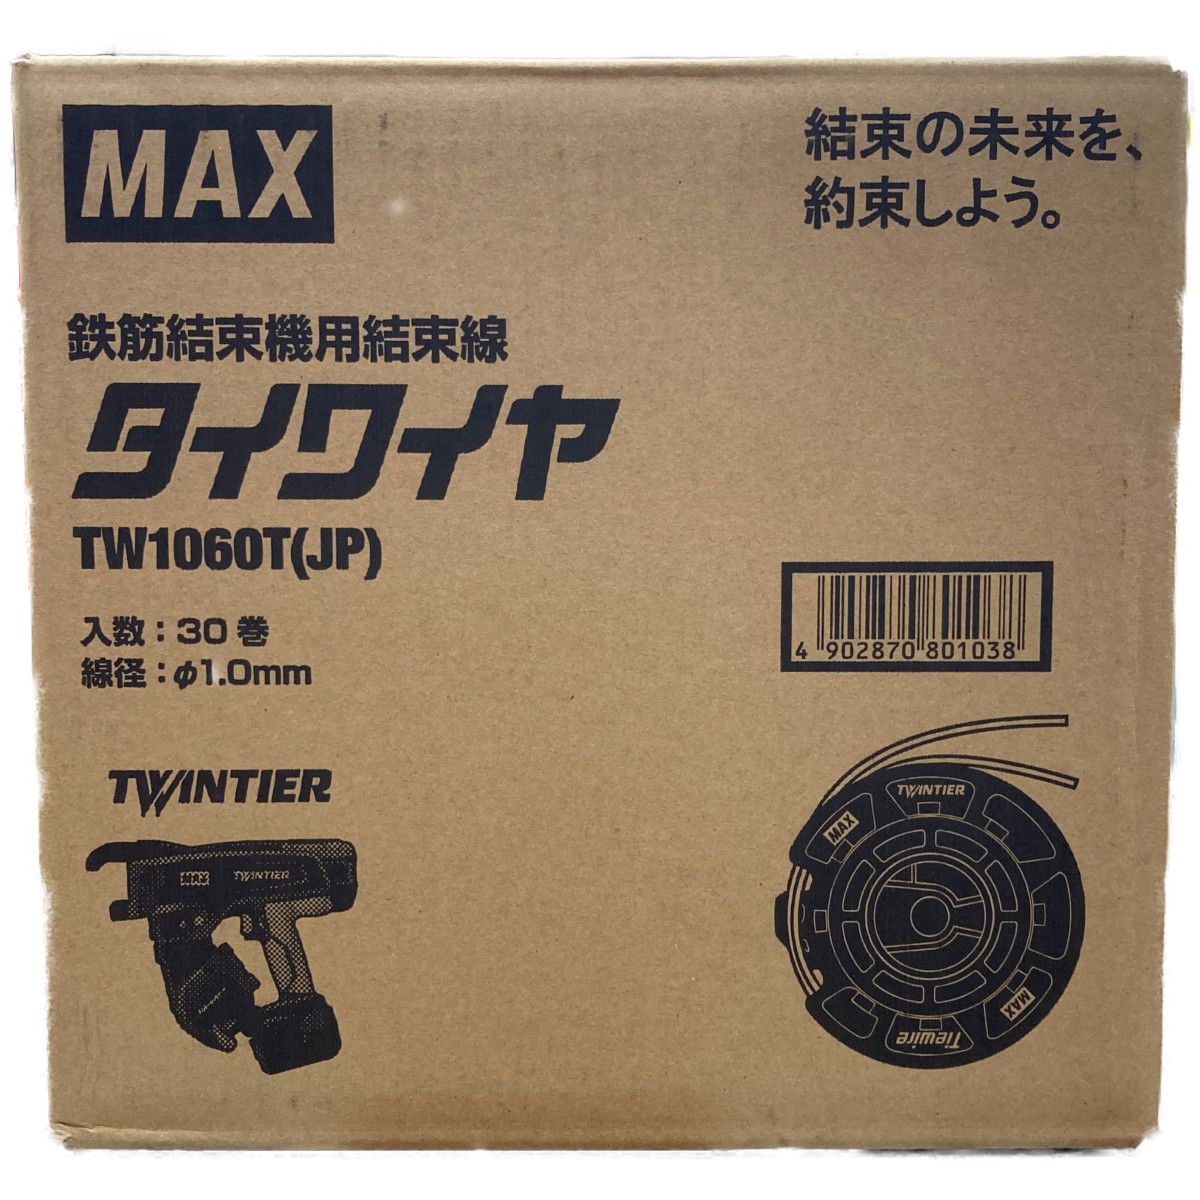 ○○ MAX 鉄筋結束機用結束線 タイワイヤTW1060T(JP) φ1.0mm なんでもリサイクルビッグバンSHOP メルカリ